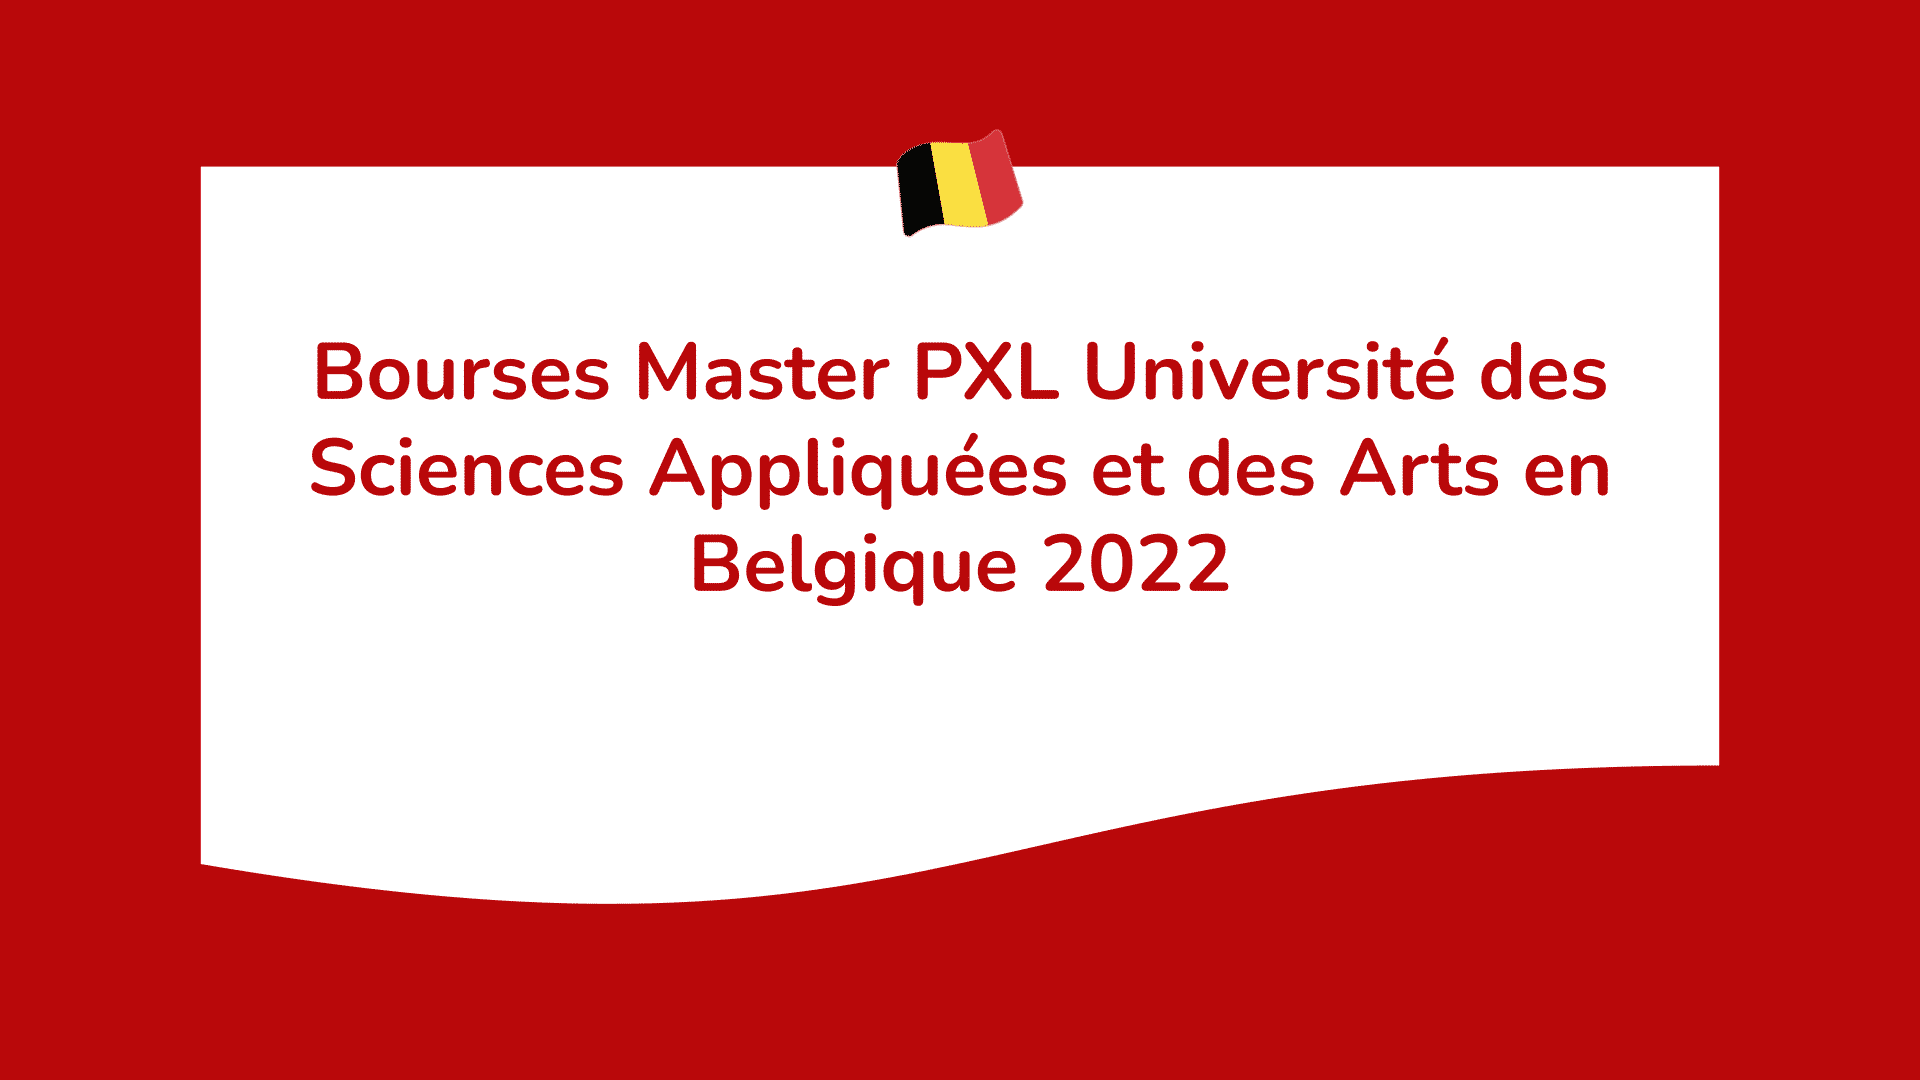 Bourses Master PXL Université des Sciences Appliquées et des Arts